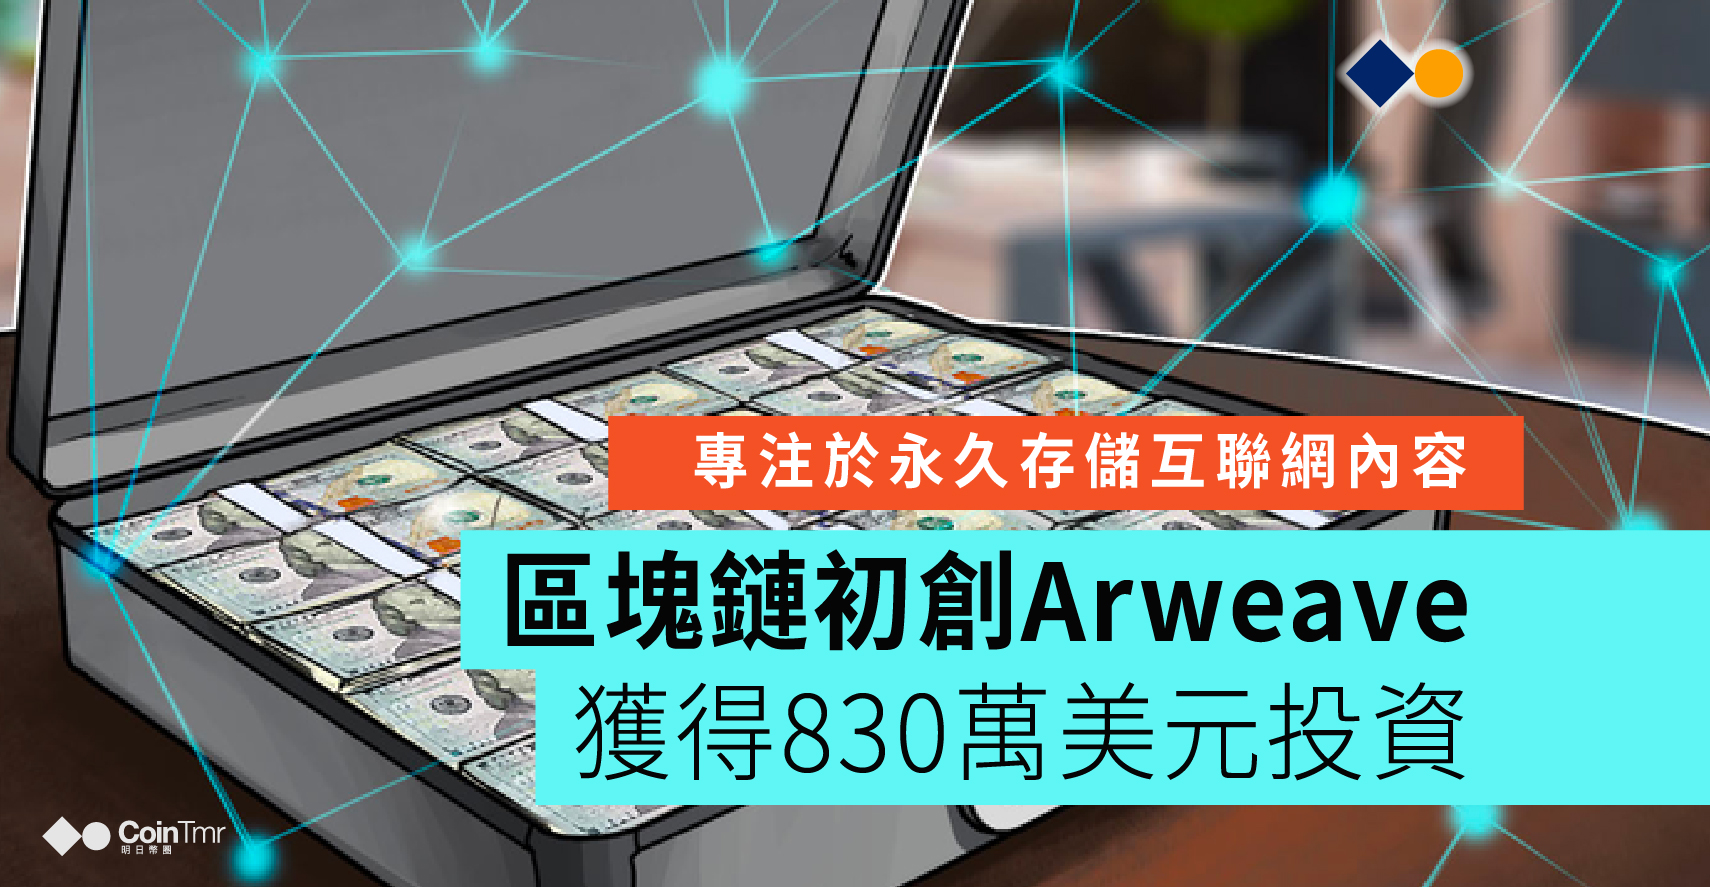 區塊鏈初創公司Arweave獲得830萬美元投資 - CoinTmr《明日幣圈》